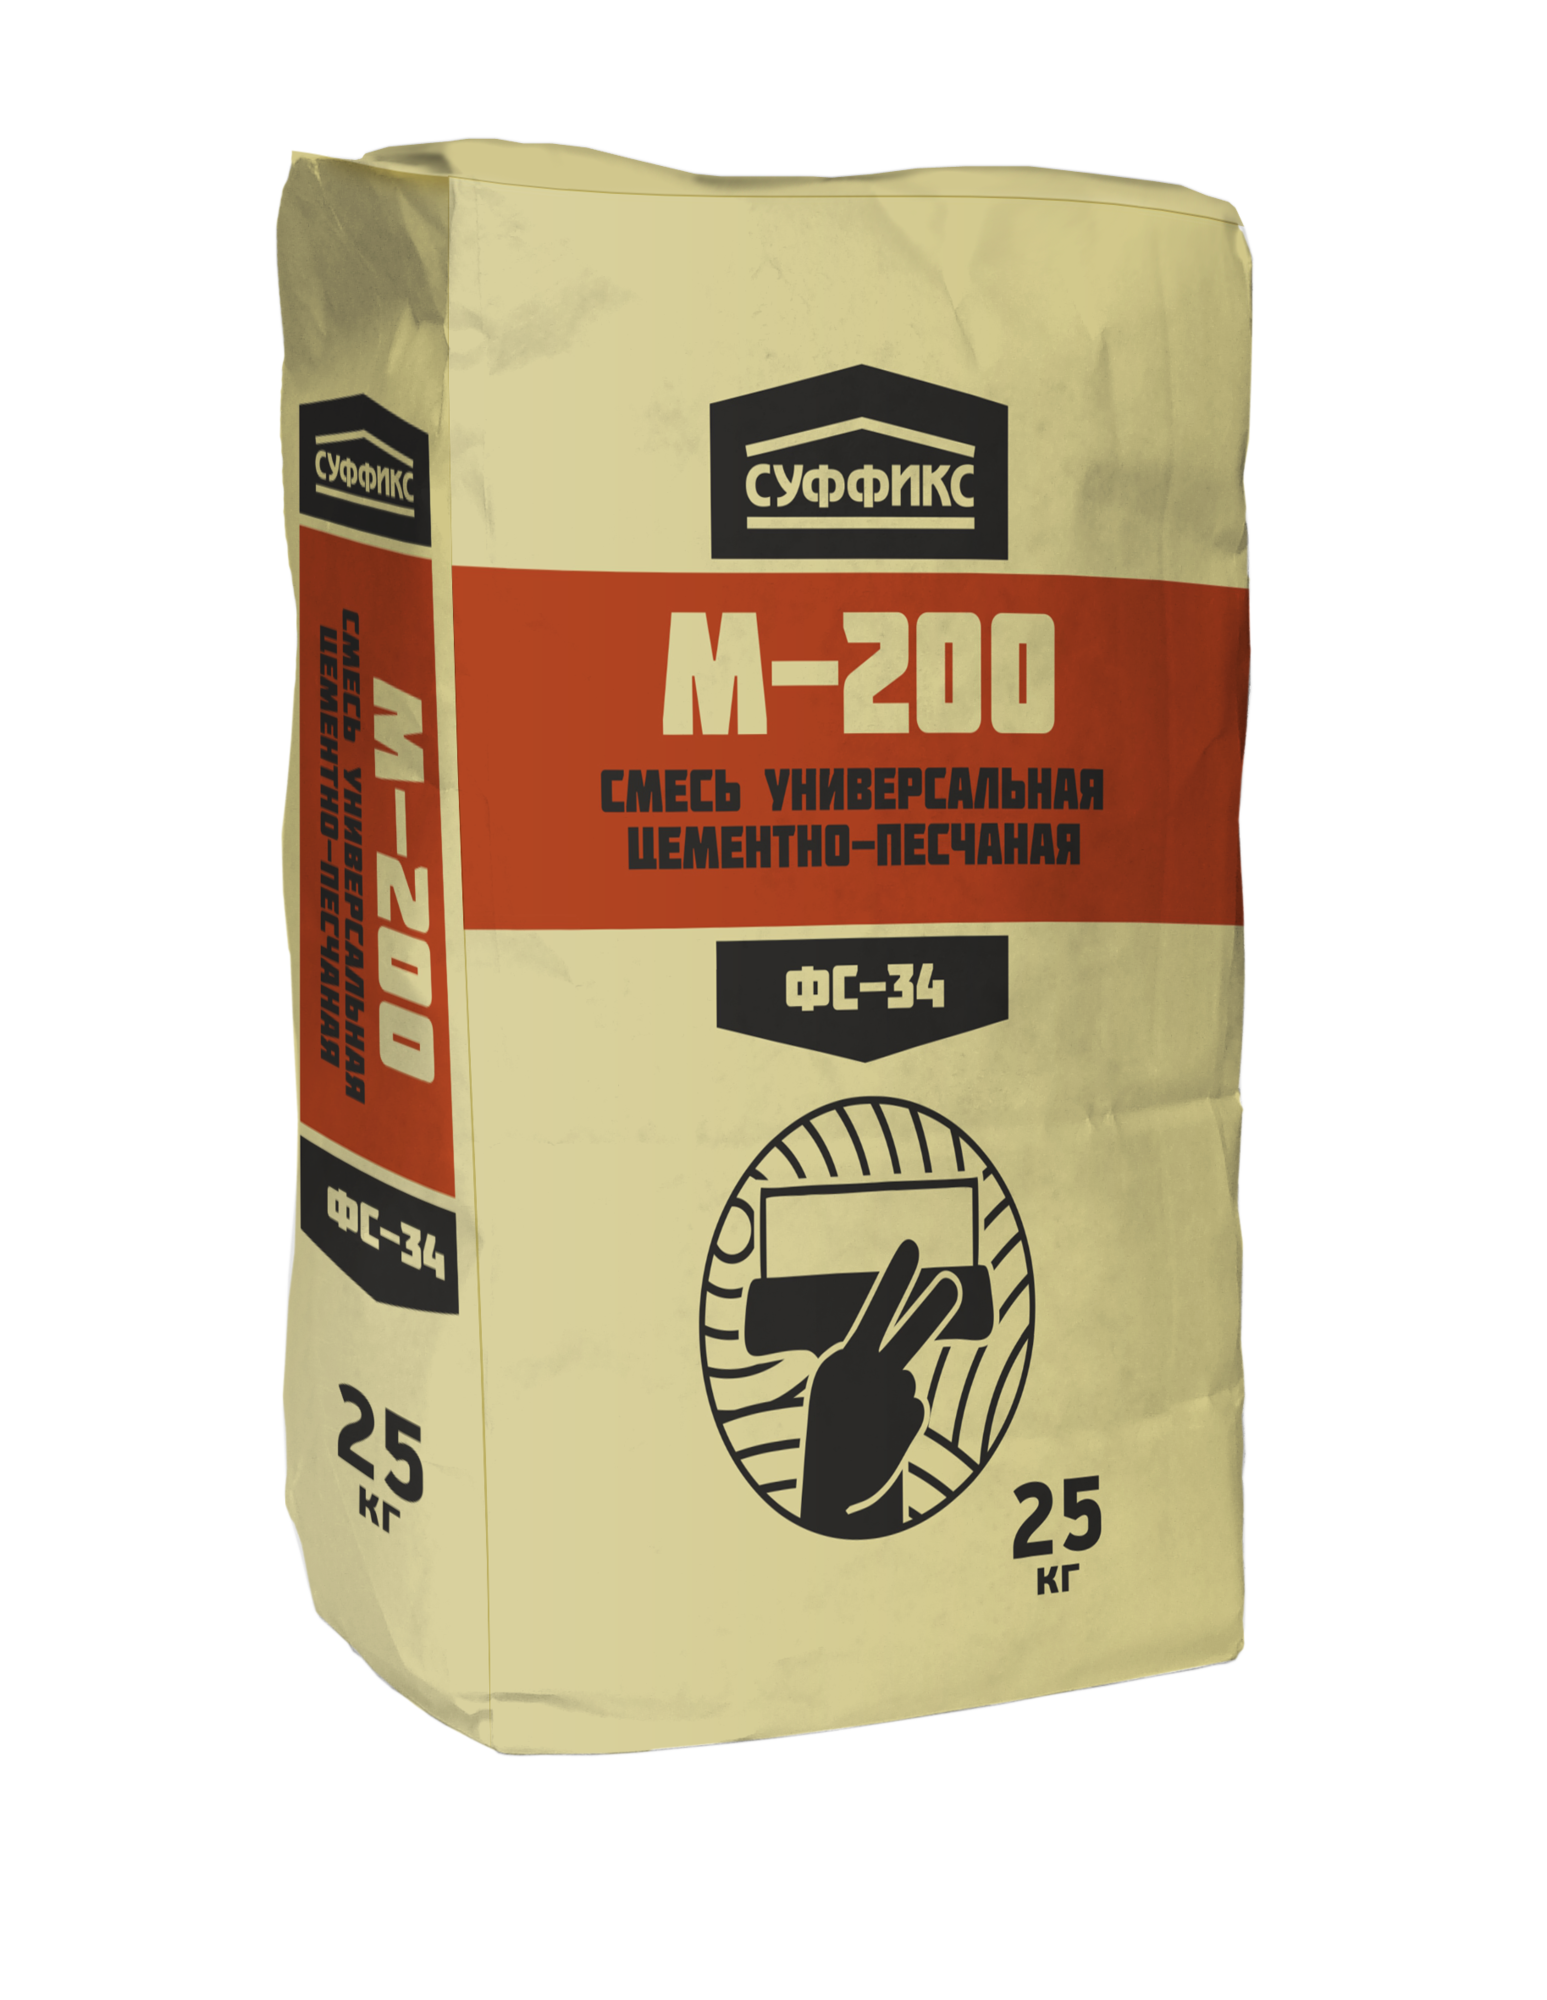 Цементно-песчаная смесь Суффикс ФС-34 М-200 25 кг. (60шт./П) (шт)